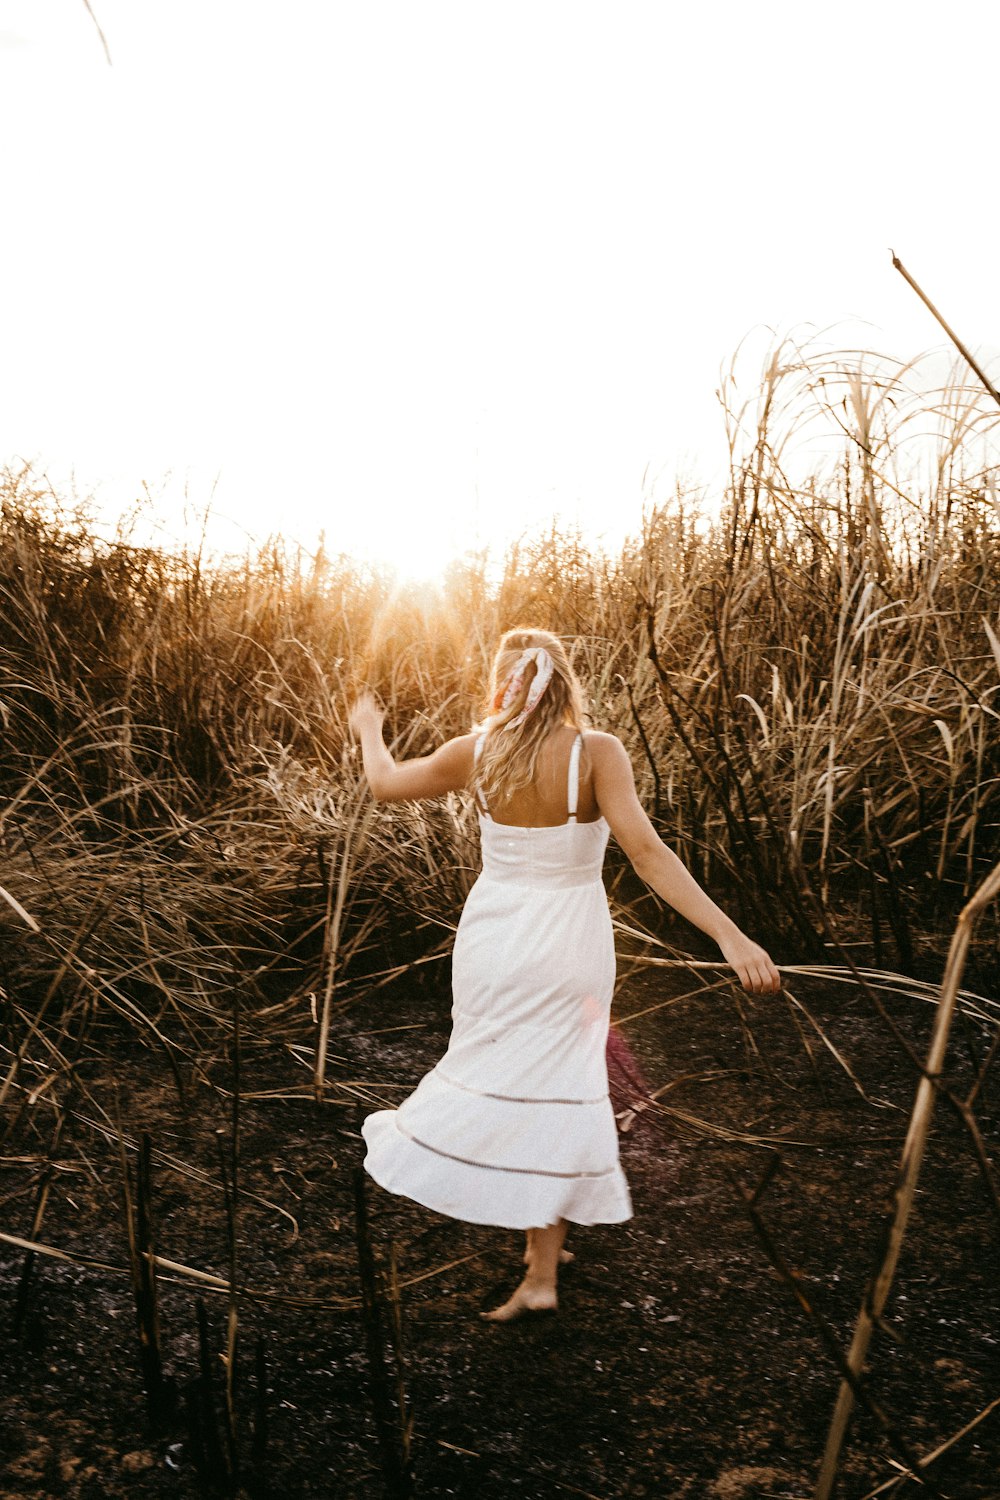 昼間、茶色の芝生の上に立つ白いドレスを着た女性